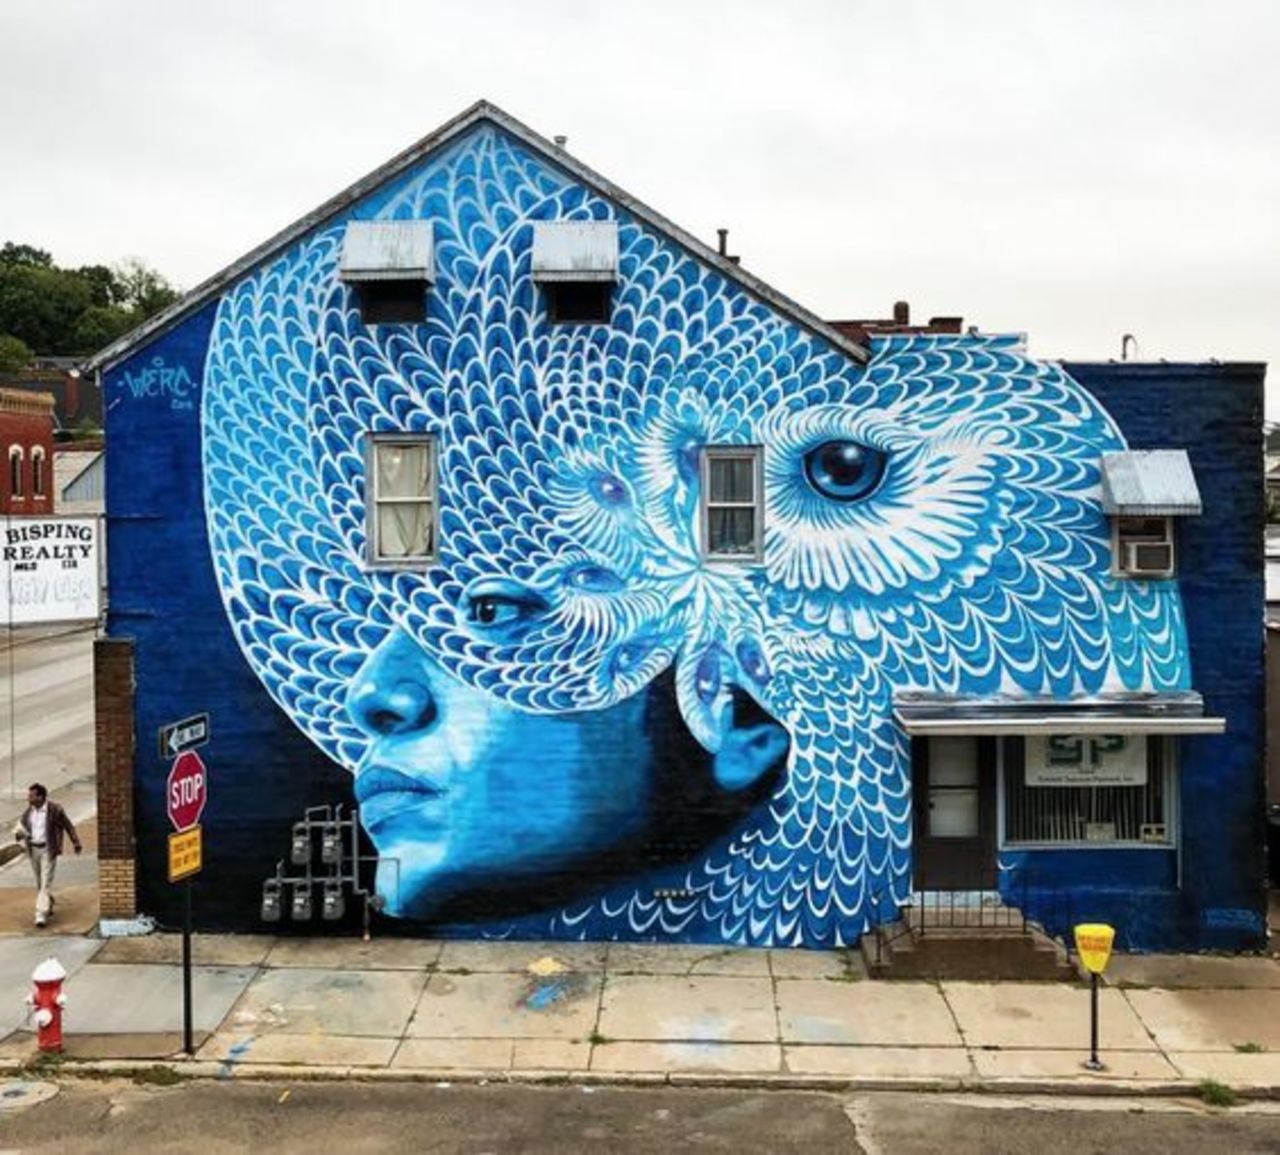 ... like beautiful blue... in metamorphosis. Art by W3rc in Dubuque, USA #StreetArt #Art #Blue #Beauty #Graffiti #Mural #UrbanArt #Dubuque https://t.co/A1cZfmeBki